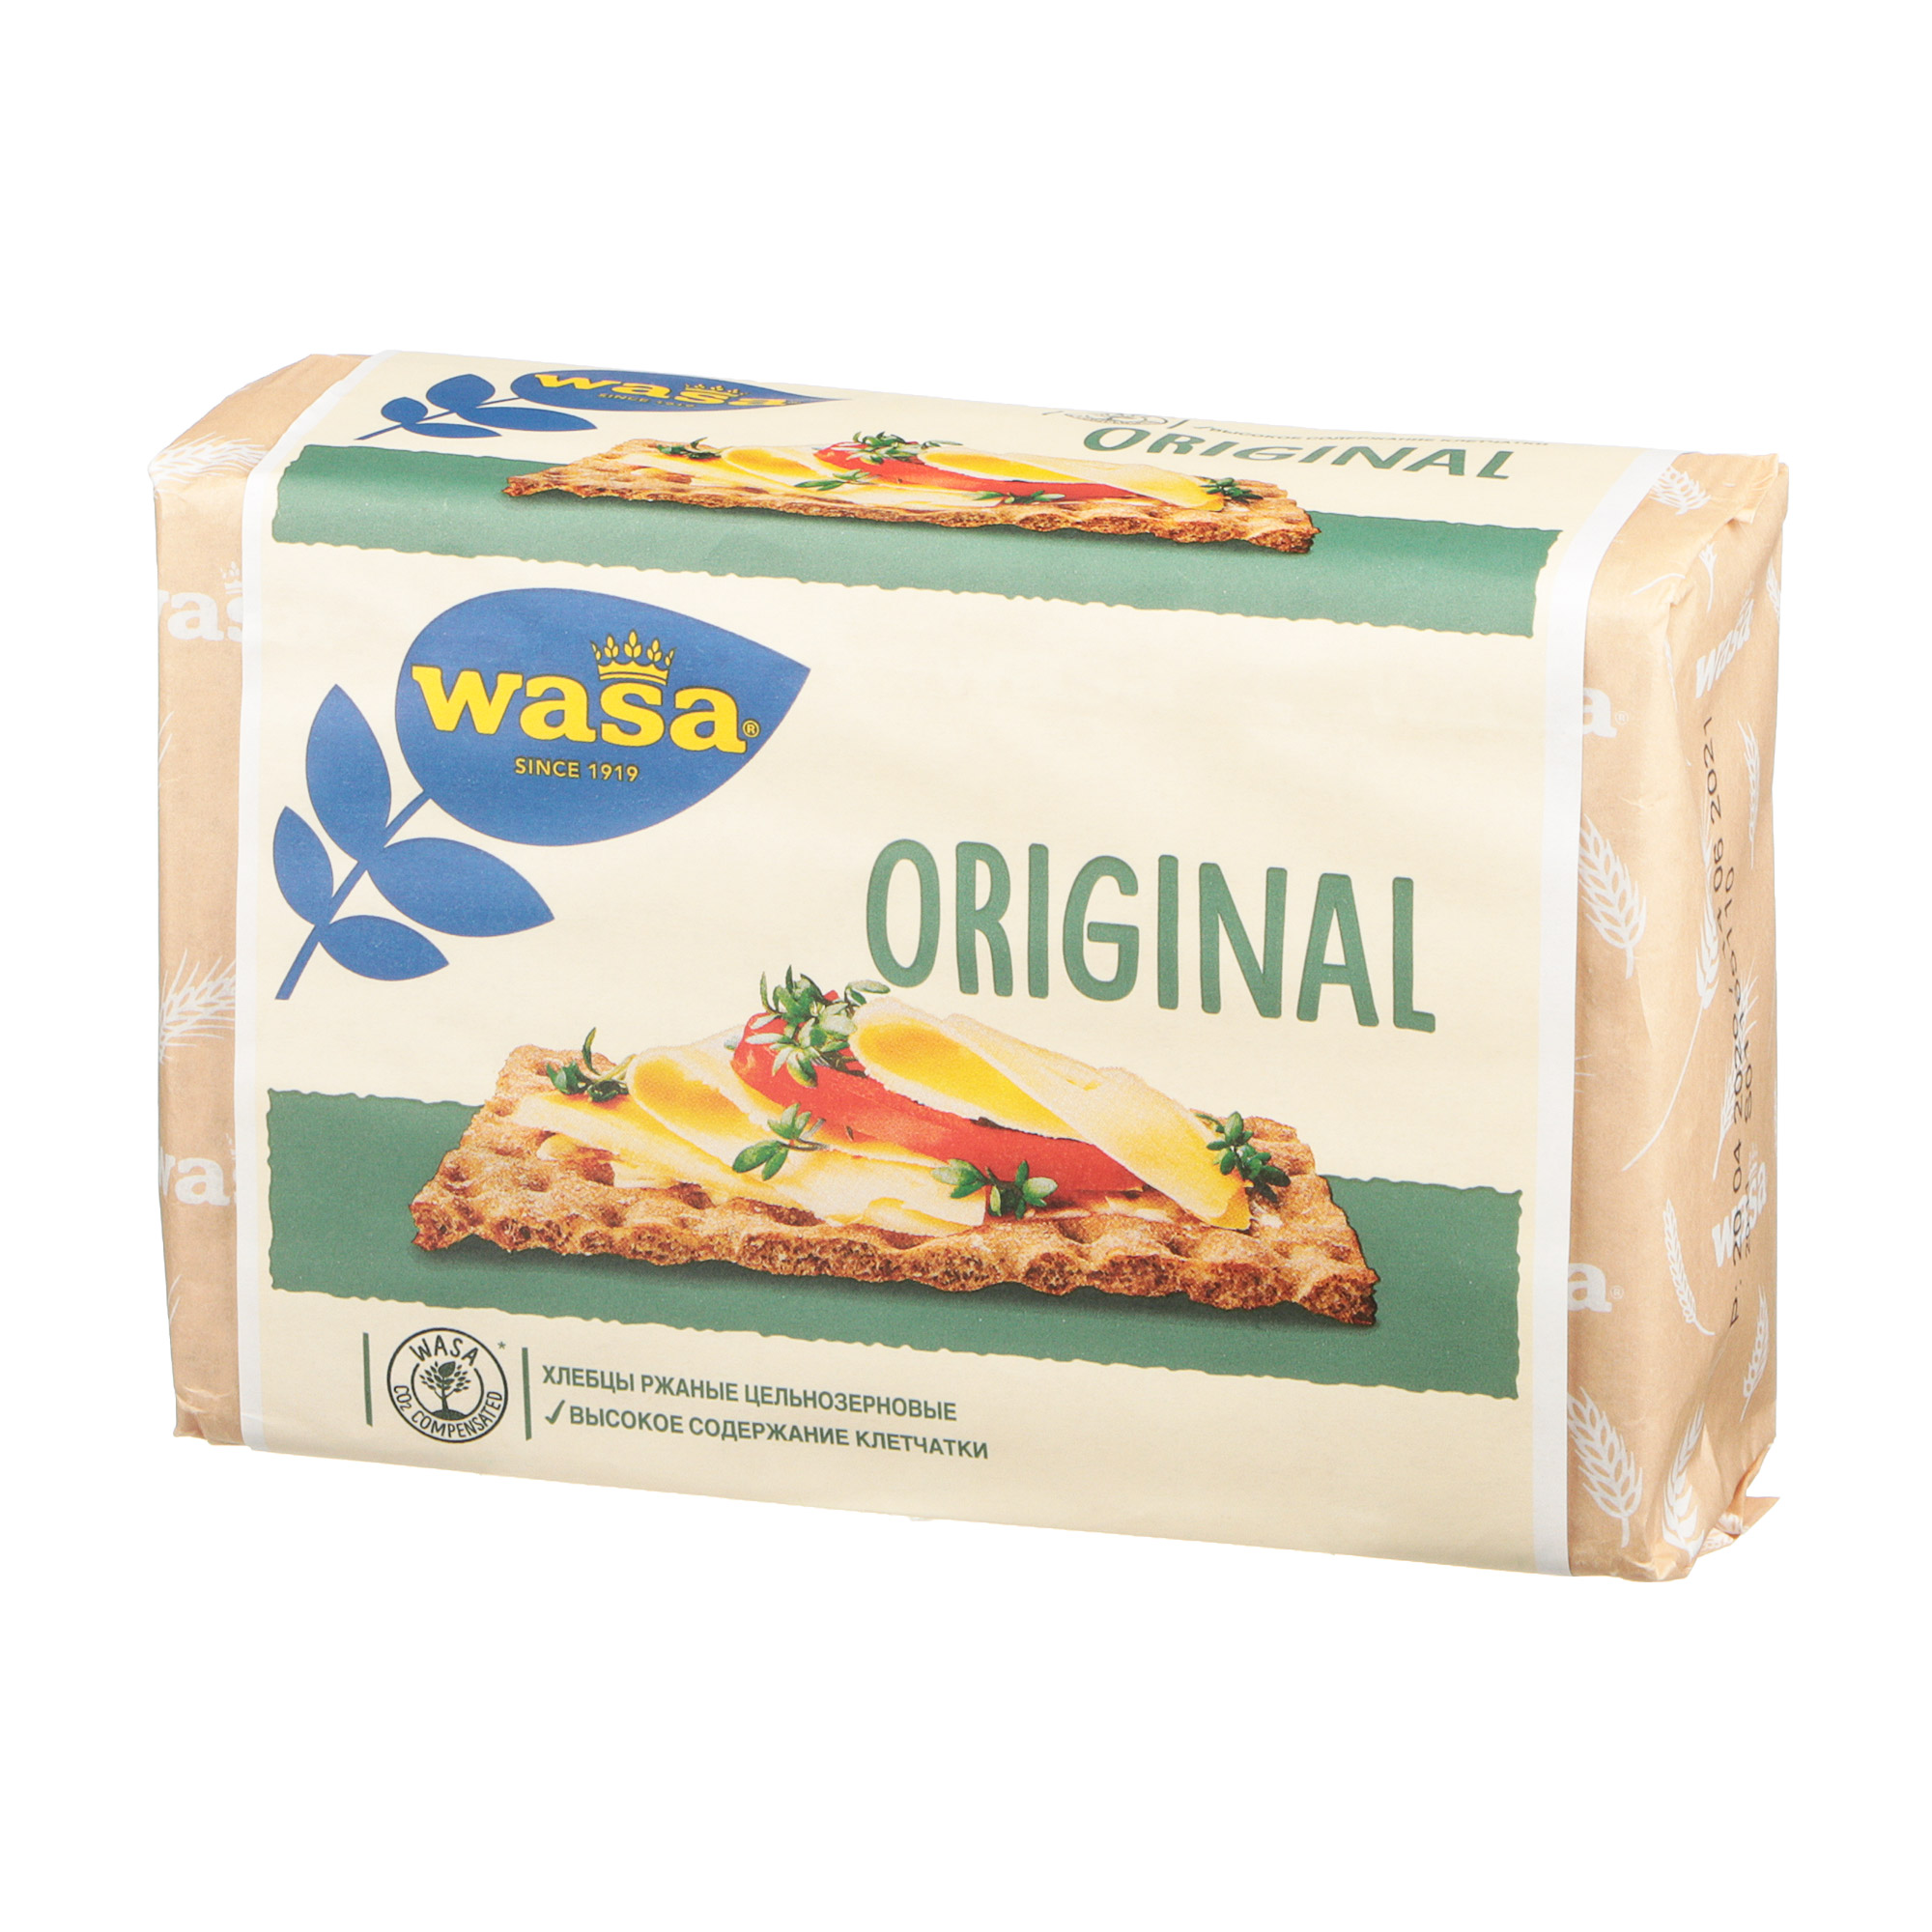 Хлебцы ржаные Wasa Original цельнозерновые 275 г хлебцы ржаные цельнозерновые wasa 275 гр